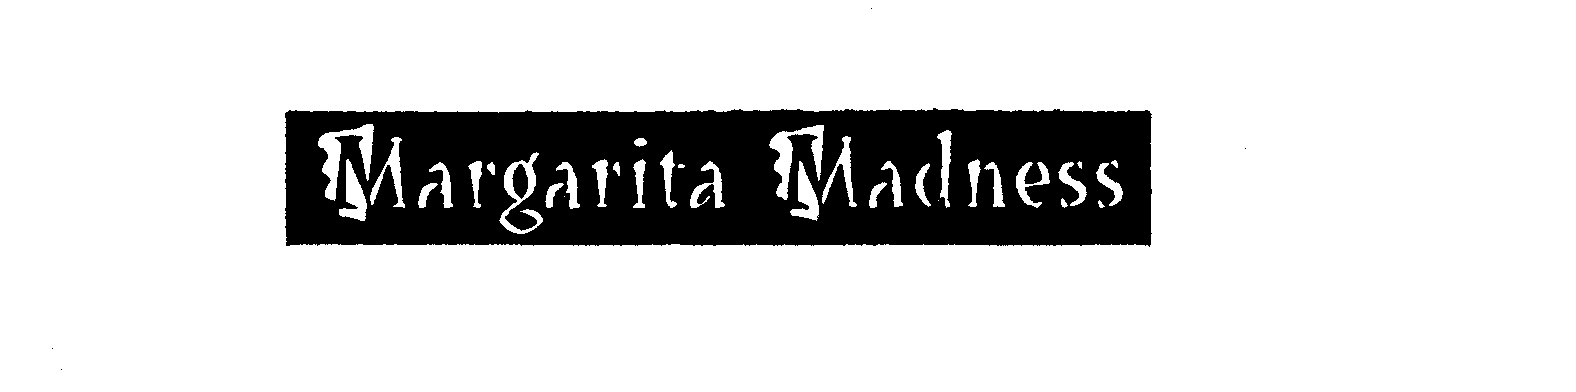 Trademark Logo MARGARITA MADNESS